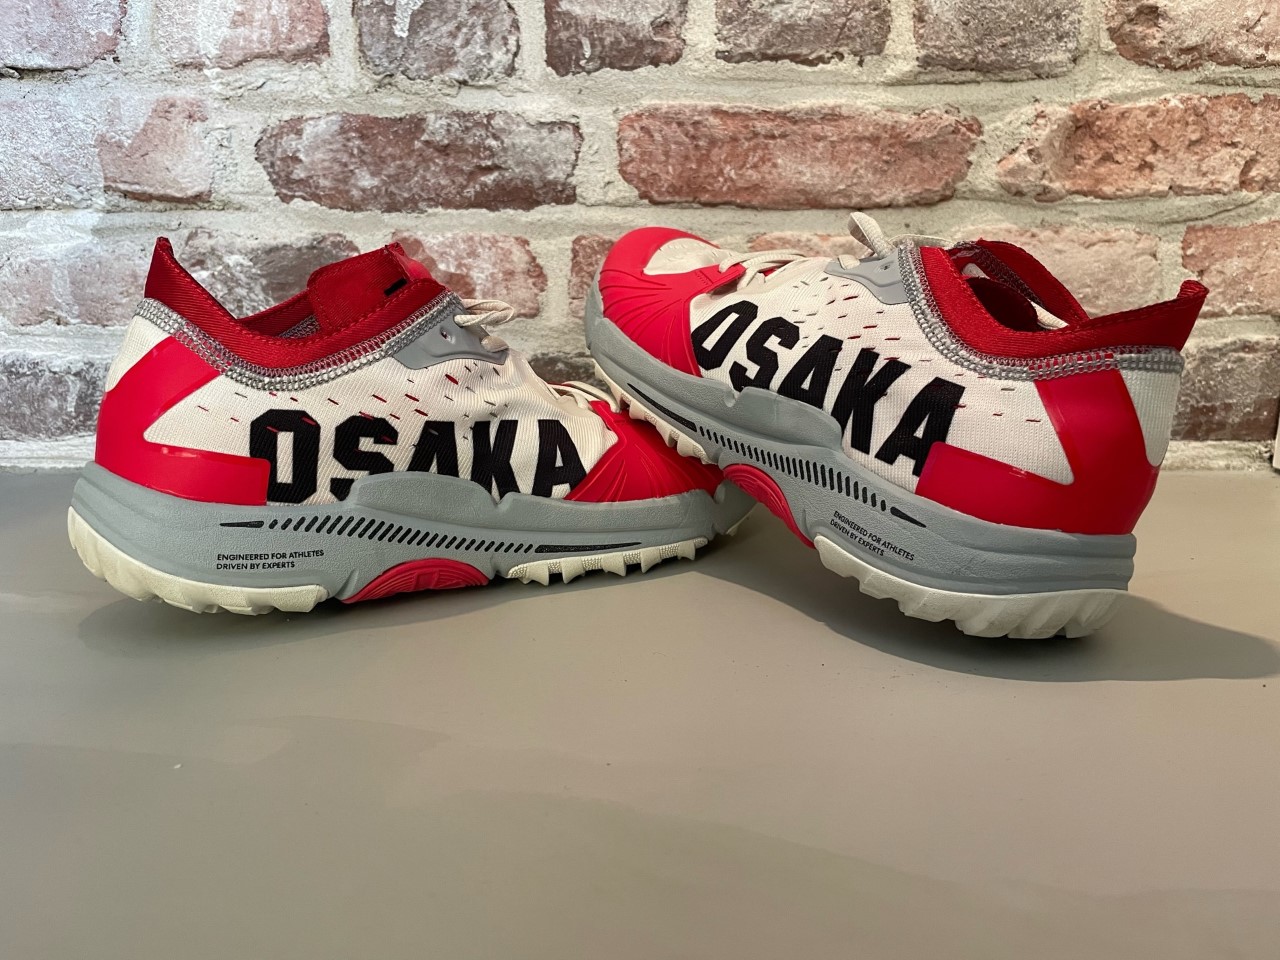 Haat Nominaal Somber Osaka padel schoenen | Review | PadelMinded.nl